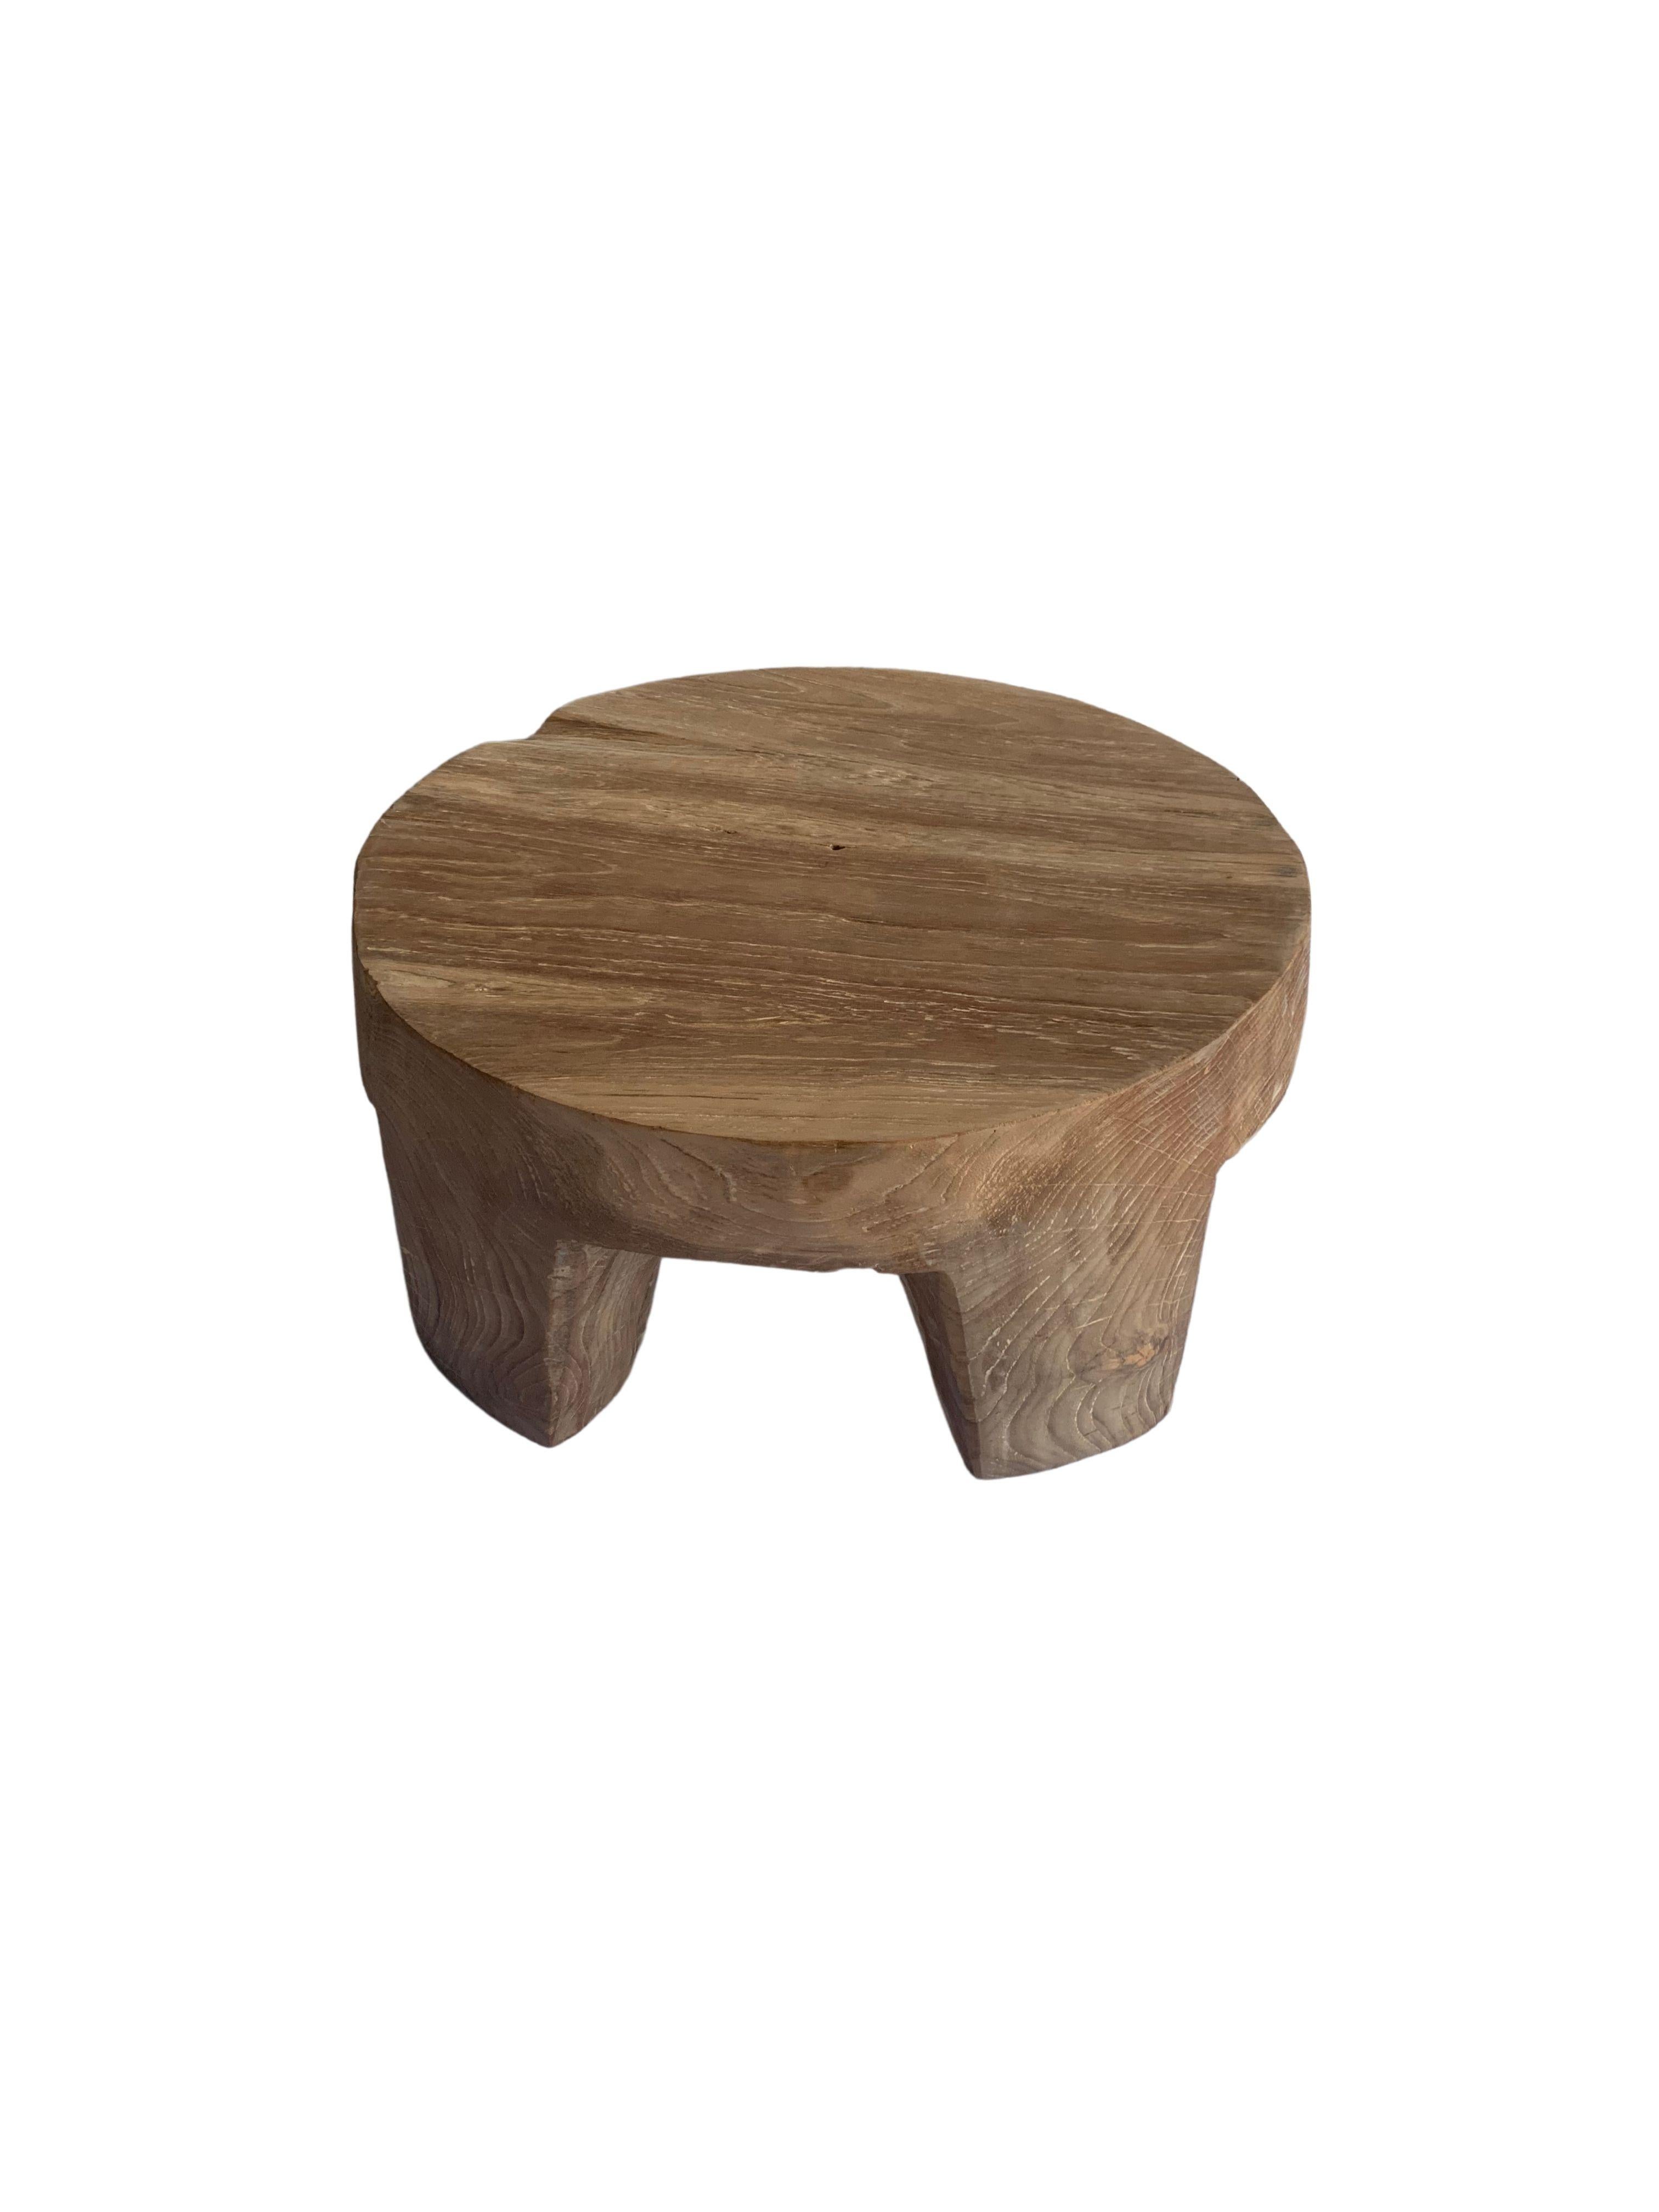 Cette table d'appoint a été fabriquée à partir d'un seul bloc de bois de teck. Une table d'appoint ronde merveilleusement sculpturale. Son pigment neutre et sa texture boisée subtile s'intègrent parfaitement à tous les espaces. Il se compose de